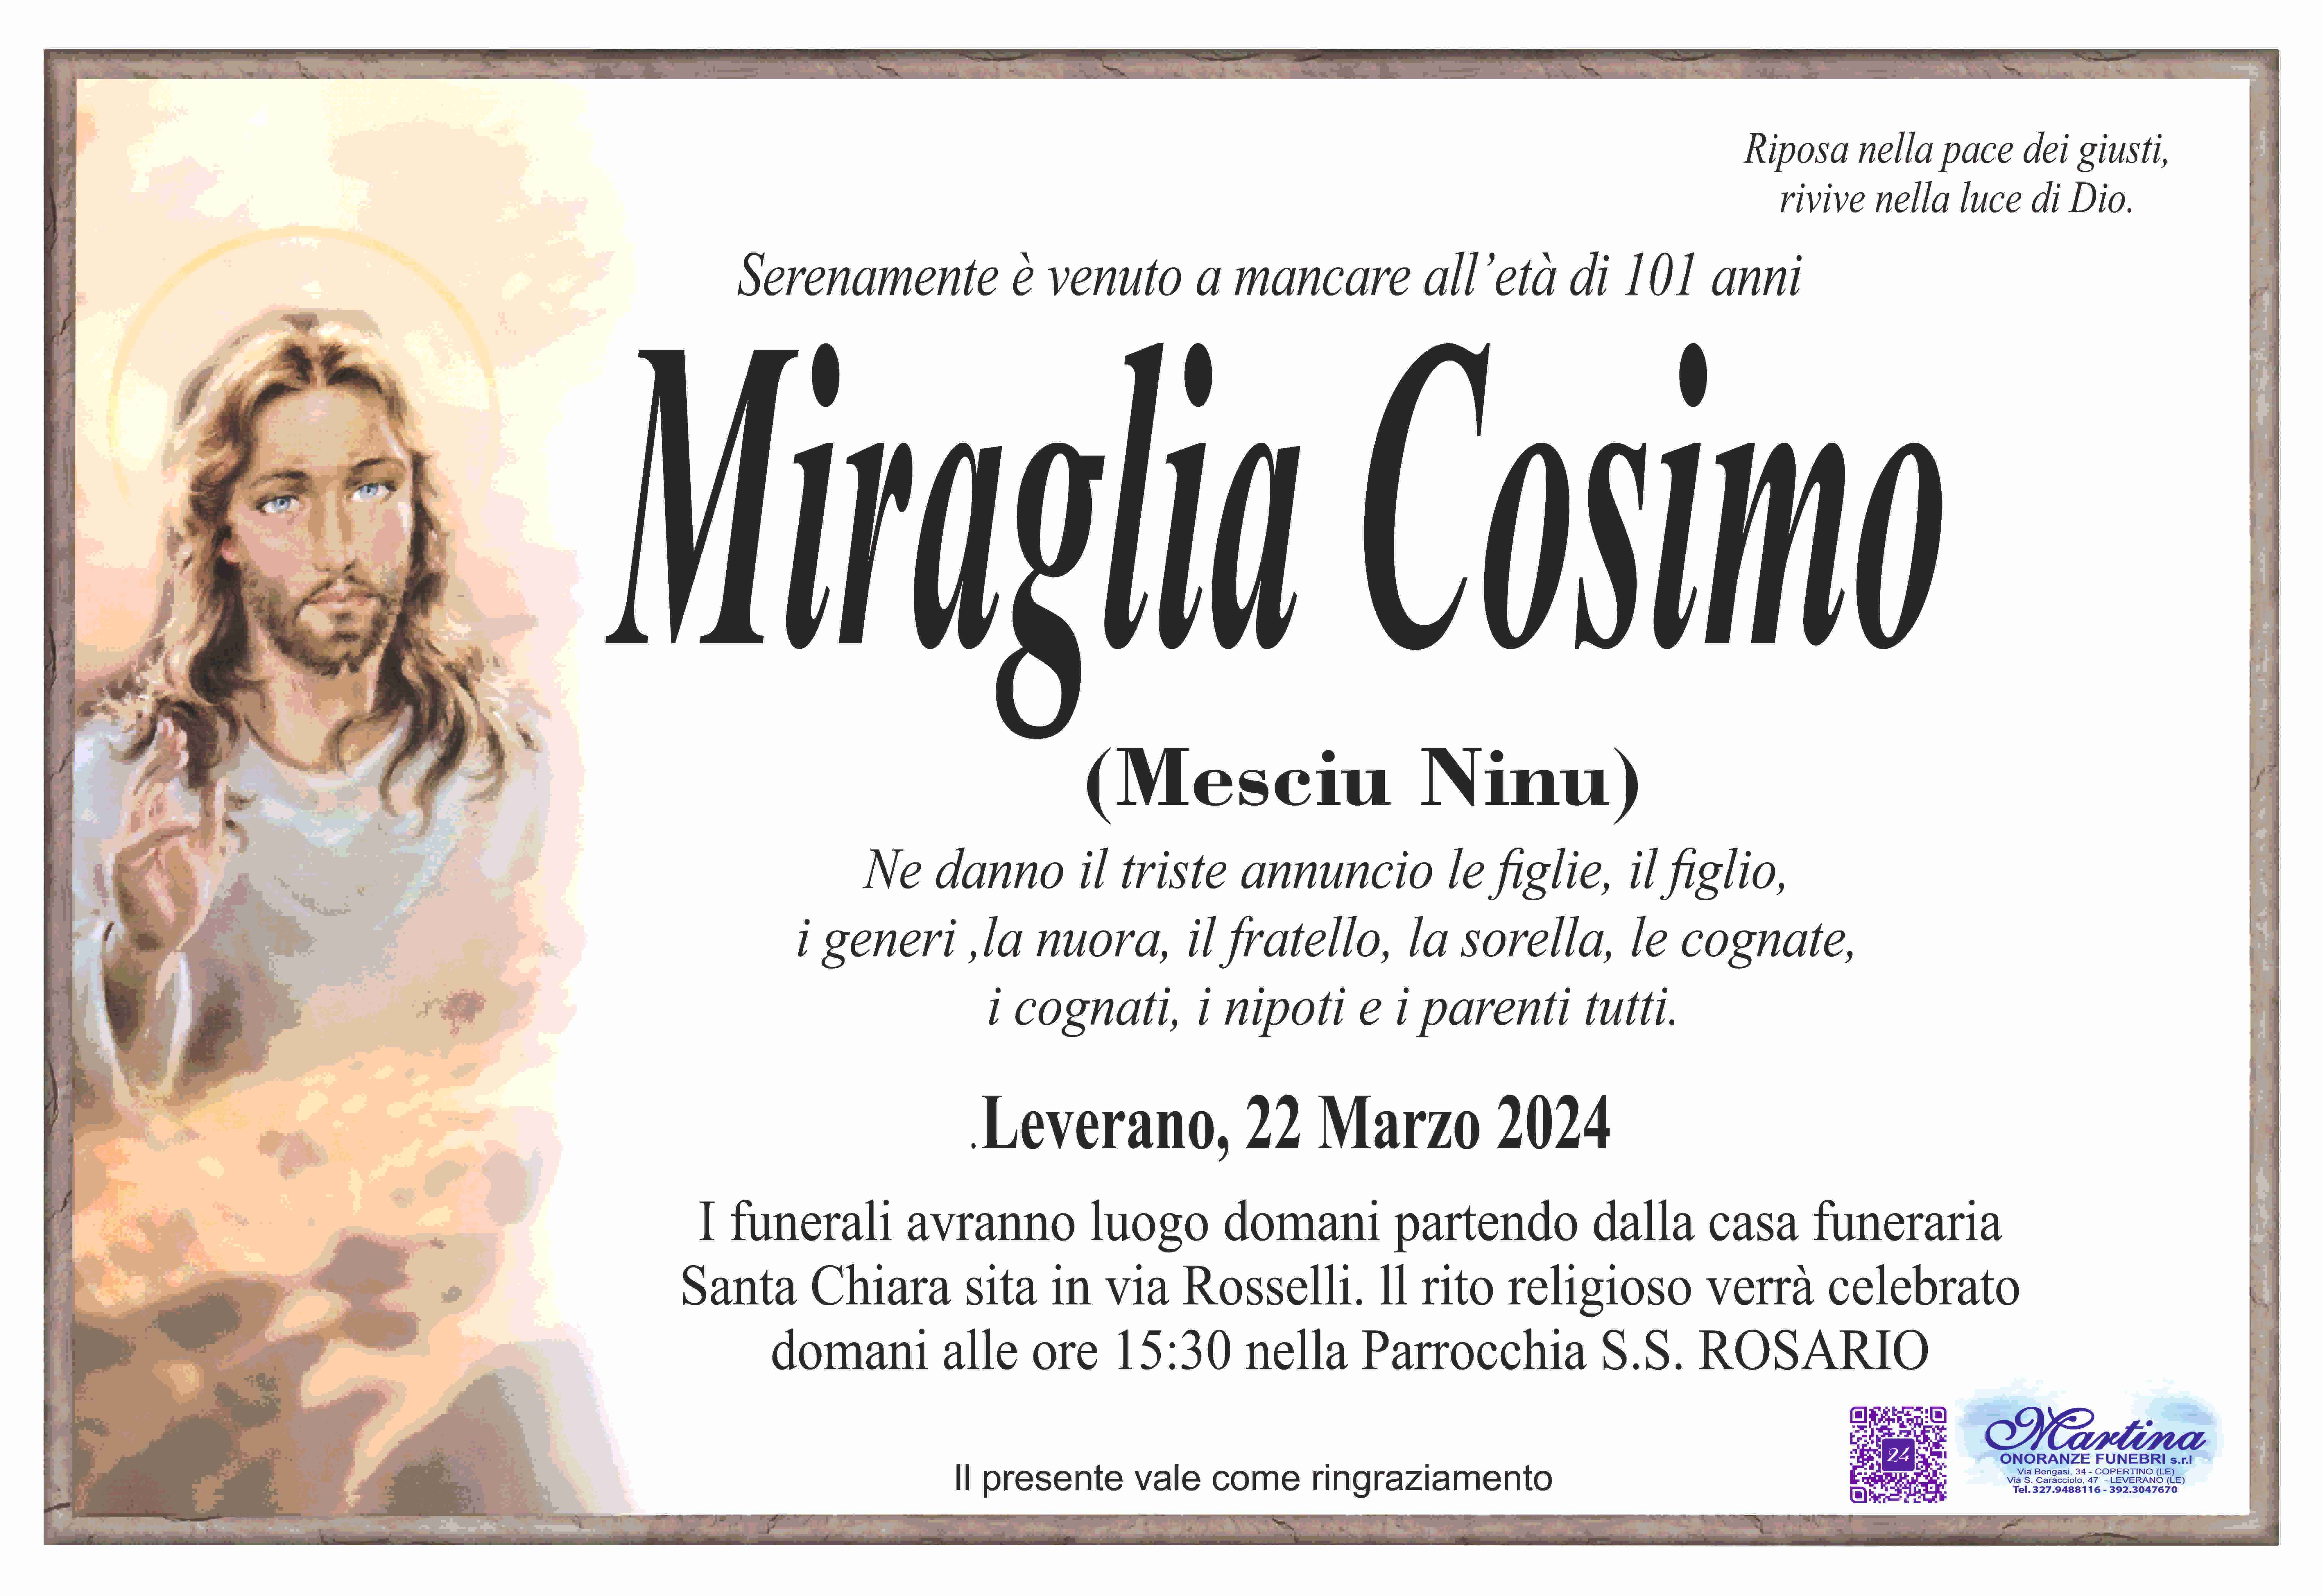 Cosimo Miraglia